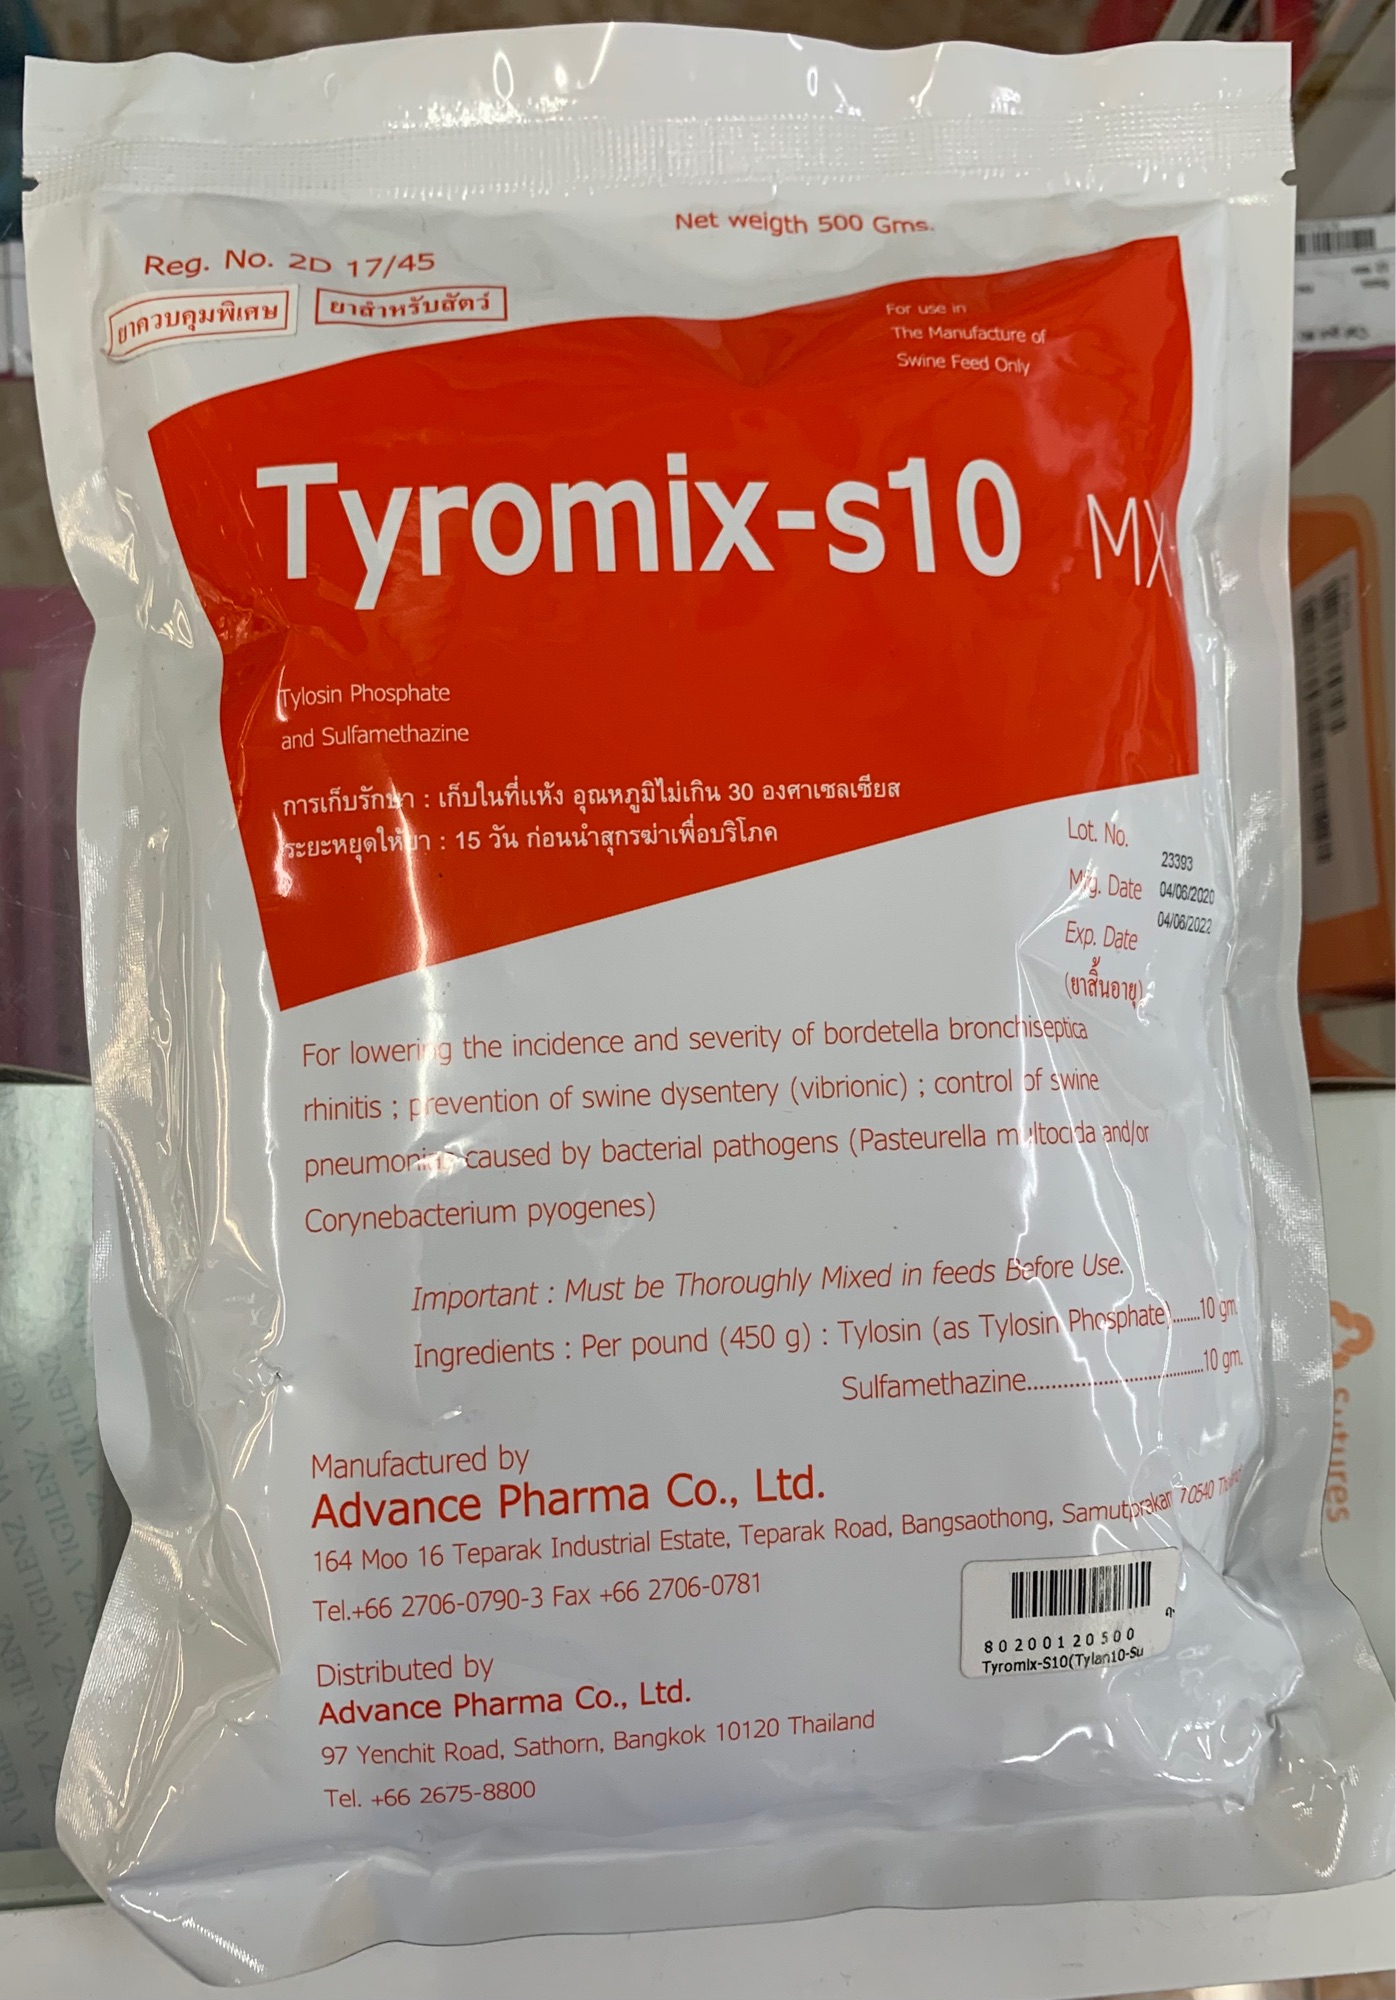 ไทโรมิกซ์-เอส 10 เอ็มเอ็กซ์ (Tyromix-S 10 MX) ขนาดบรรจุ 500 กรัม